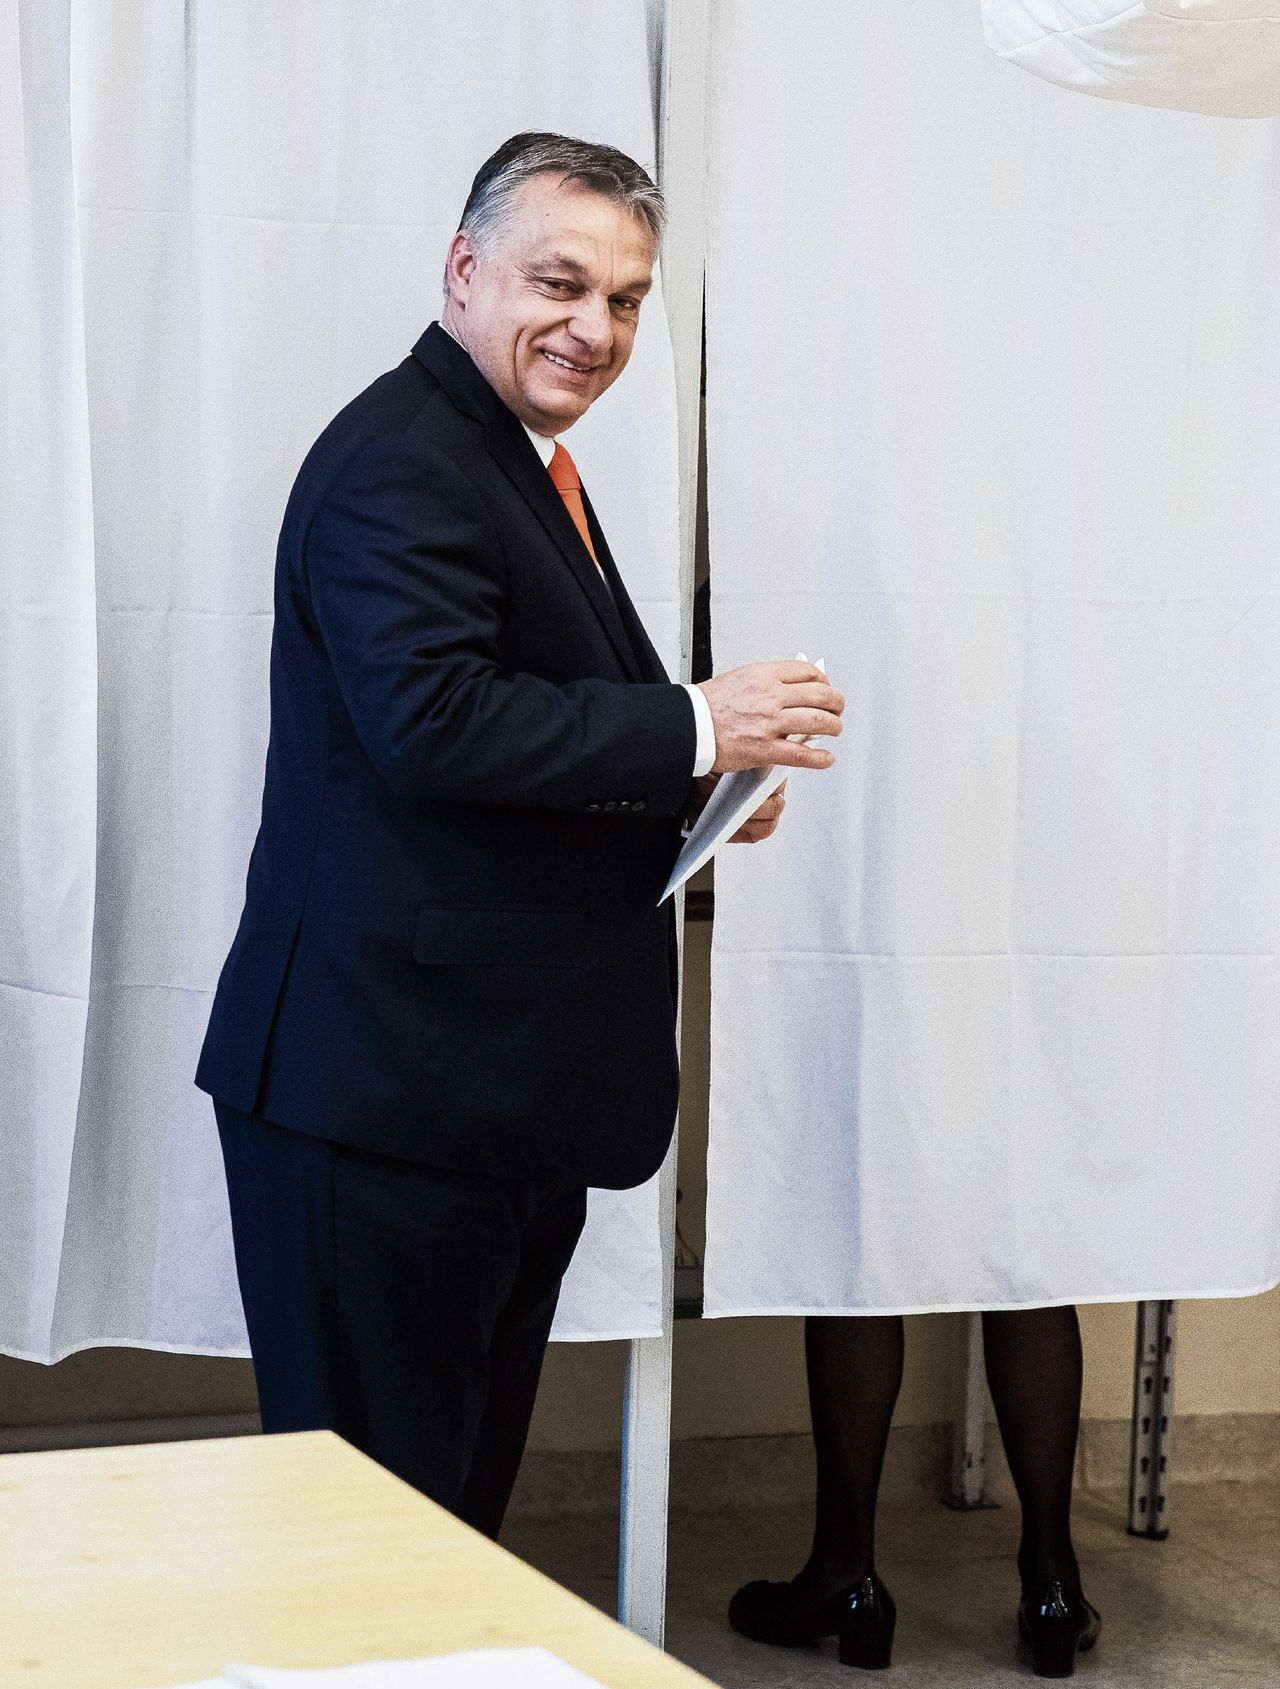 Viktor Orbán brengt zijn stem uit bij de presidentsverkiezingen in 2018.